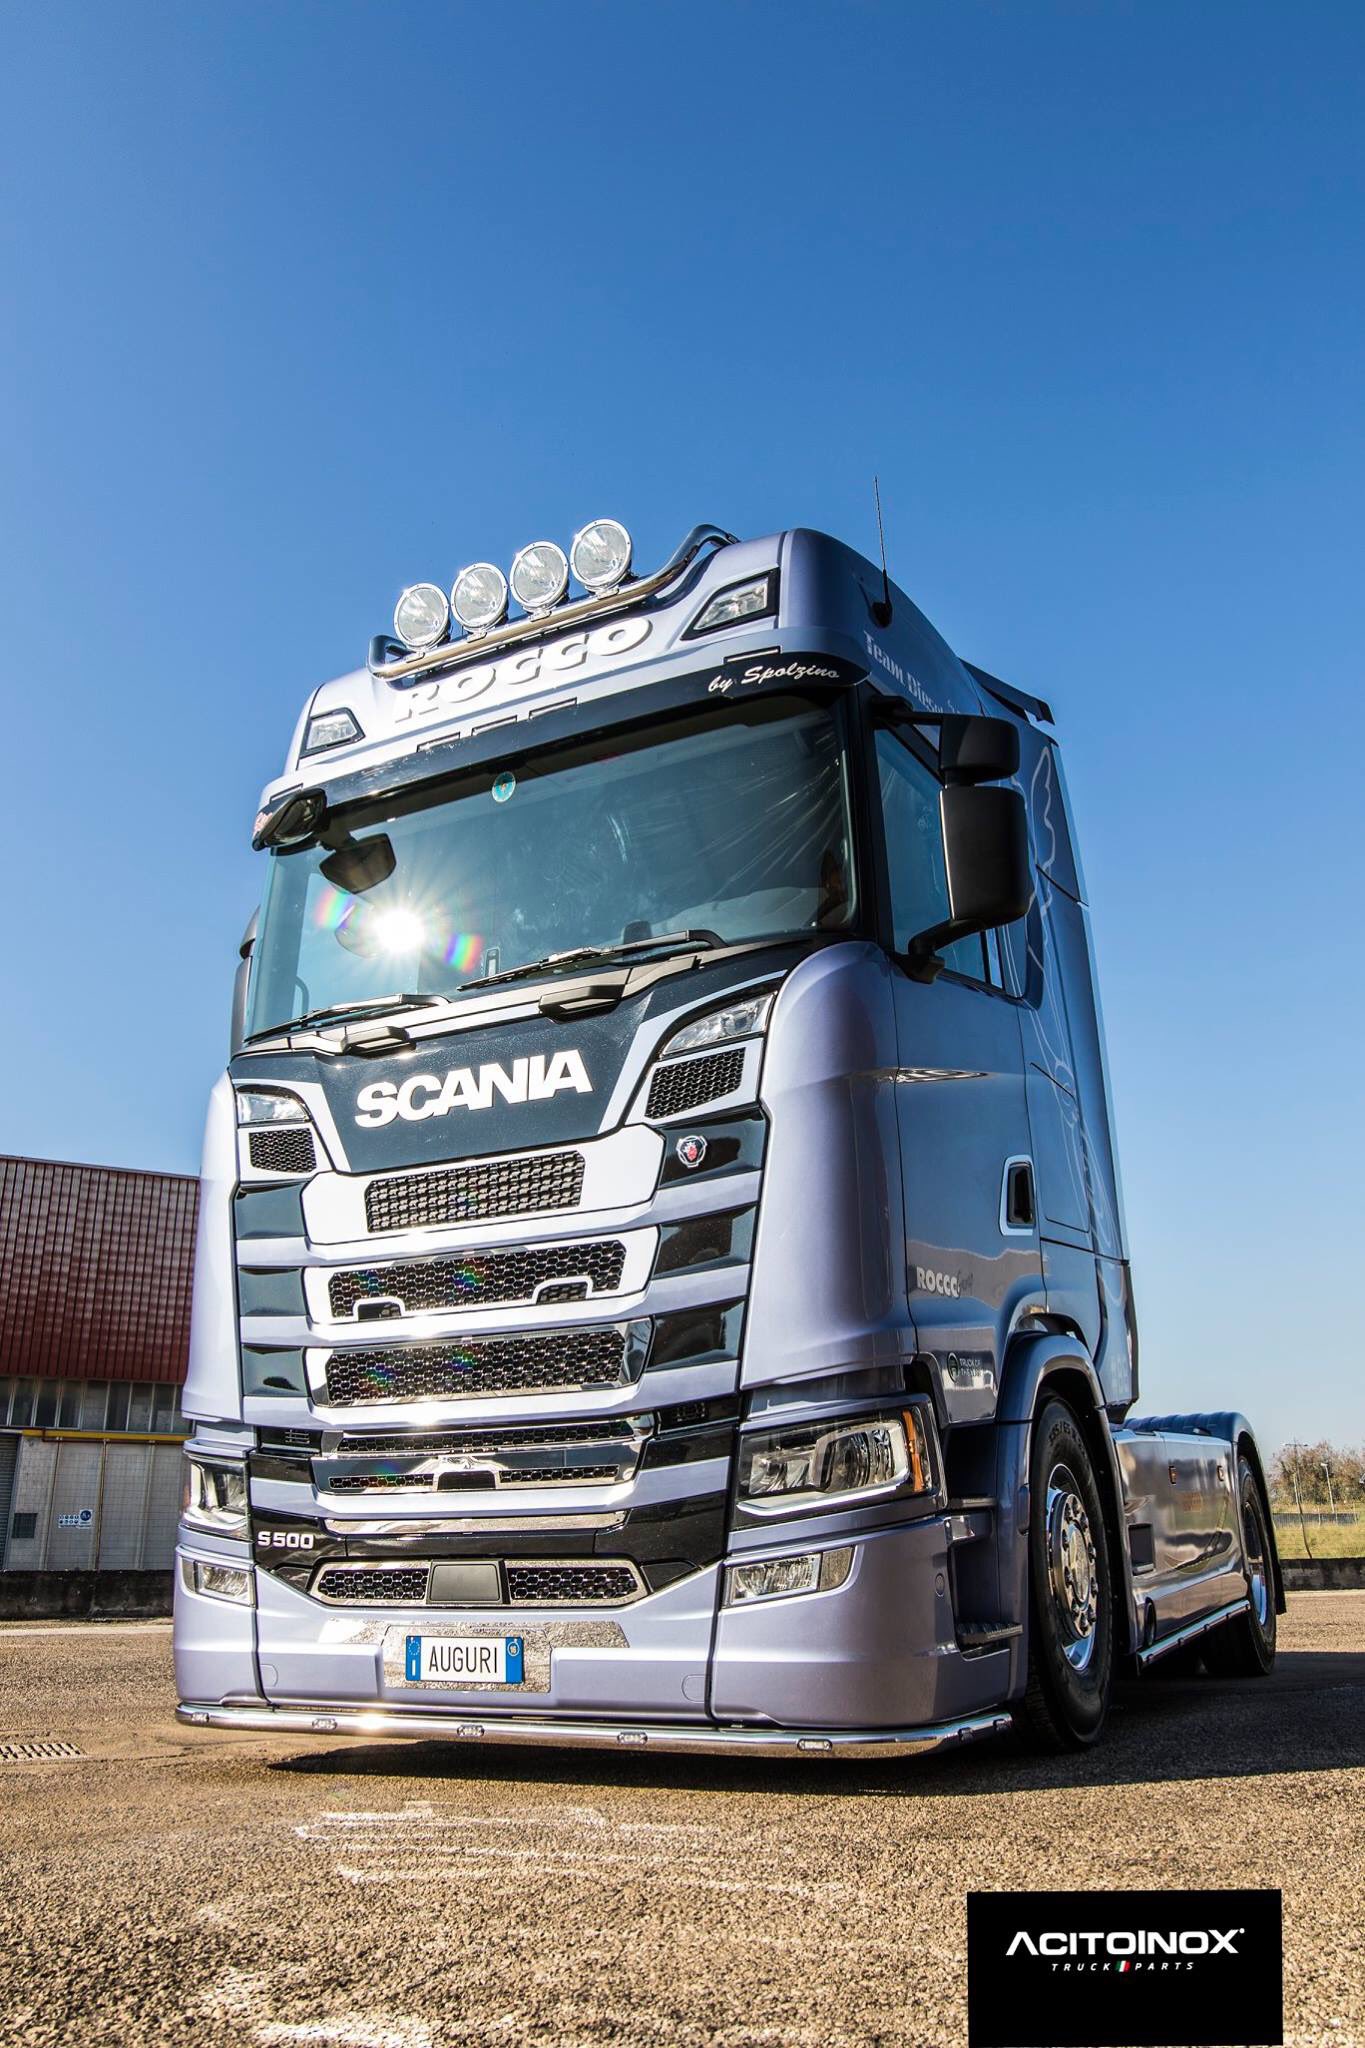 Ricambi e accessori Scania New Generation in acciaio - Acitoinox